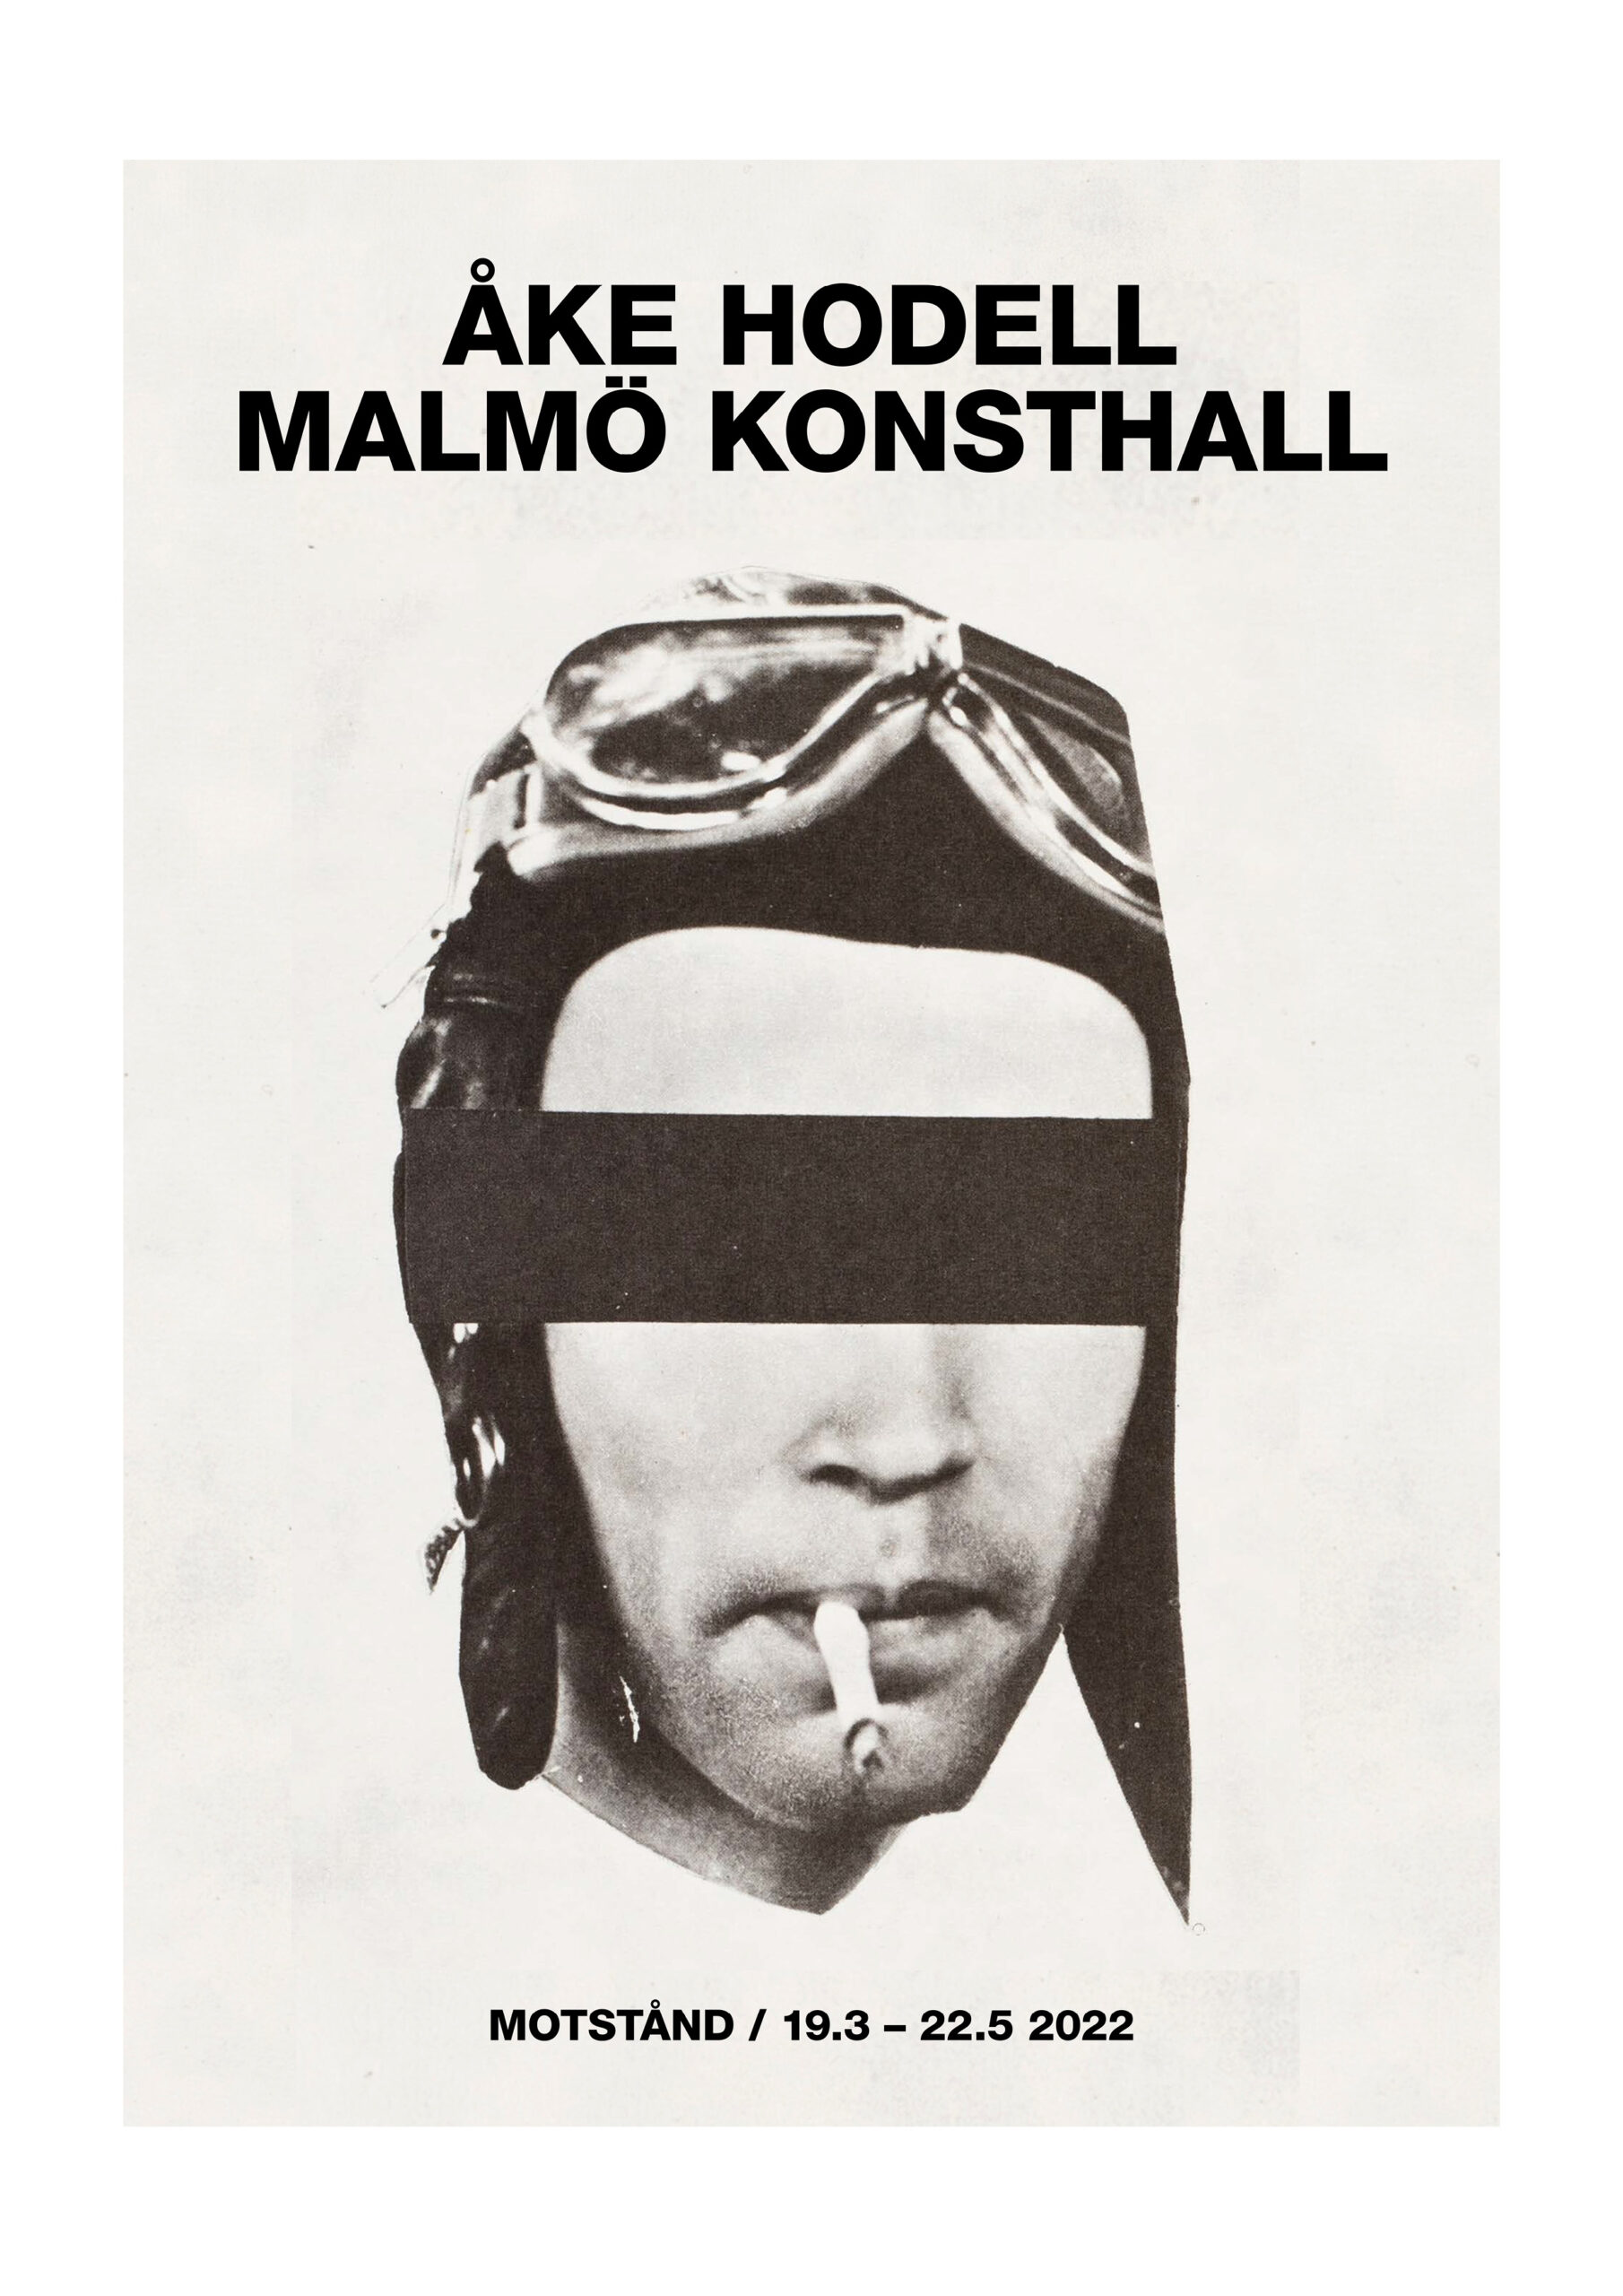 Poster Åke Hodell: Svartvitt självporträtt, foto och collage, av Åke Hodell i flygarmössa och överstrukna ögon.